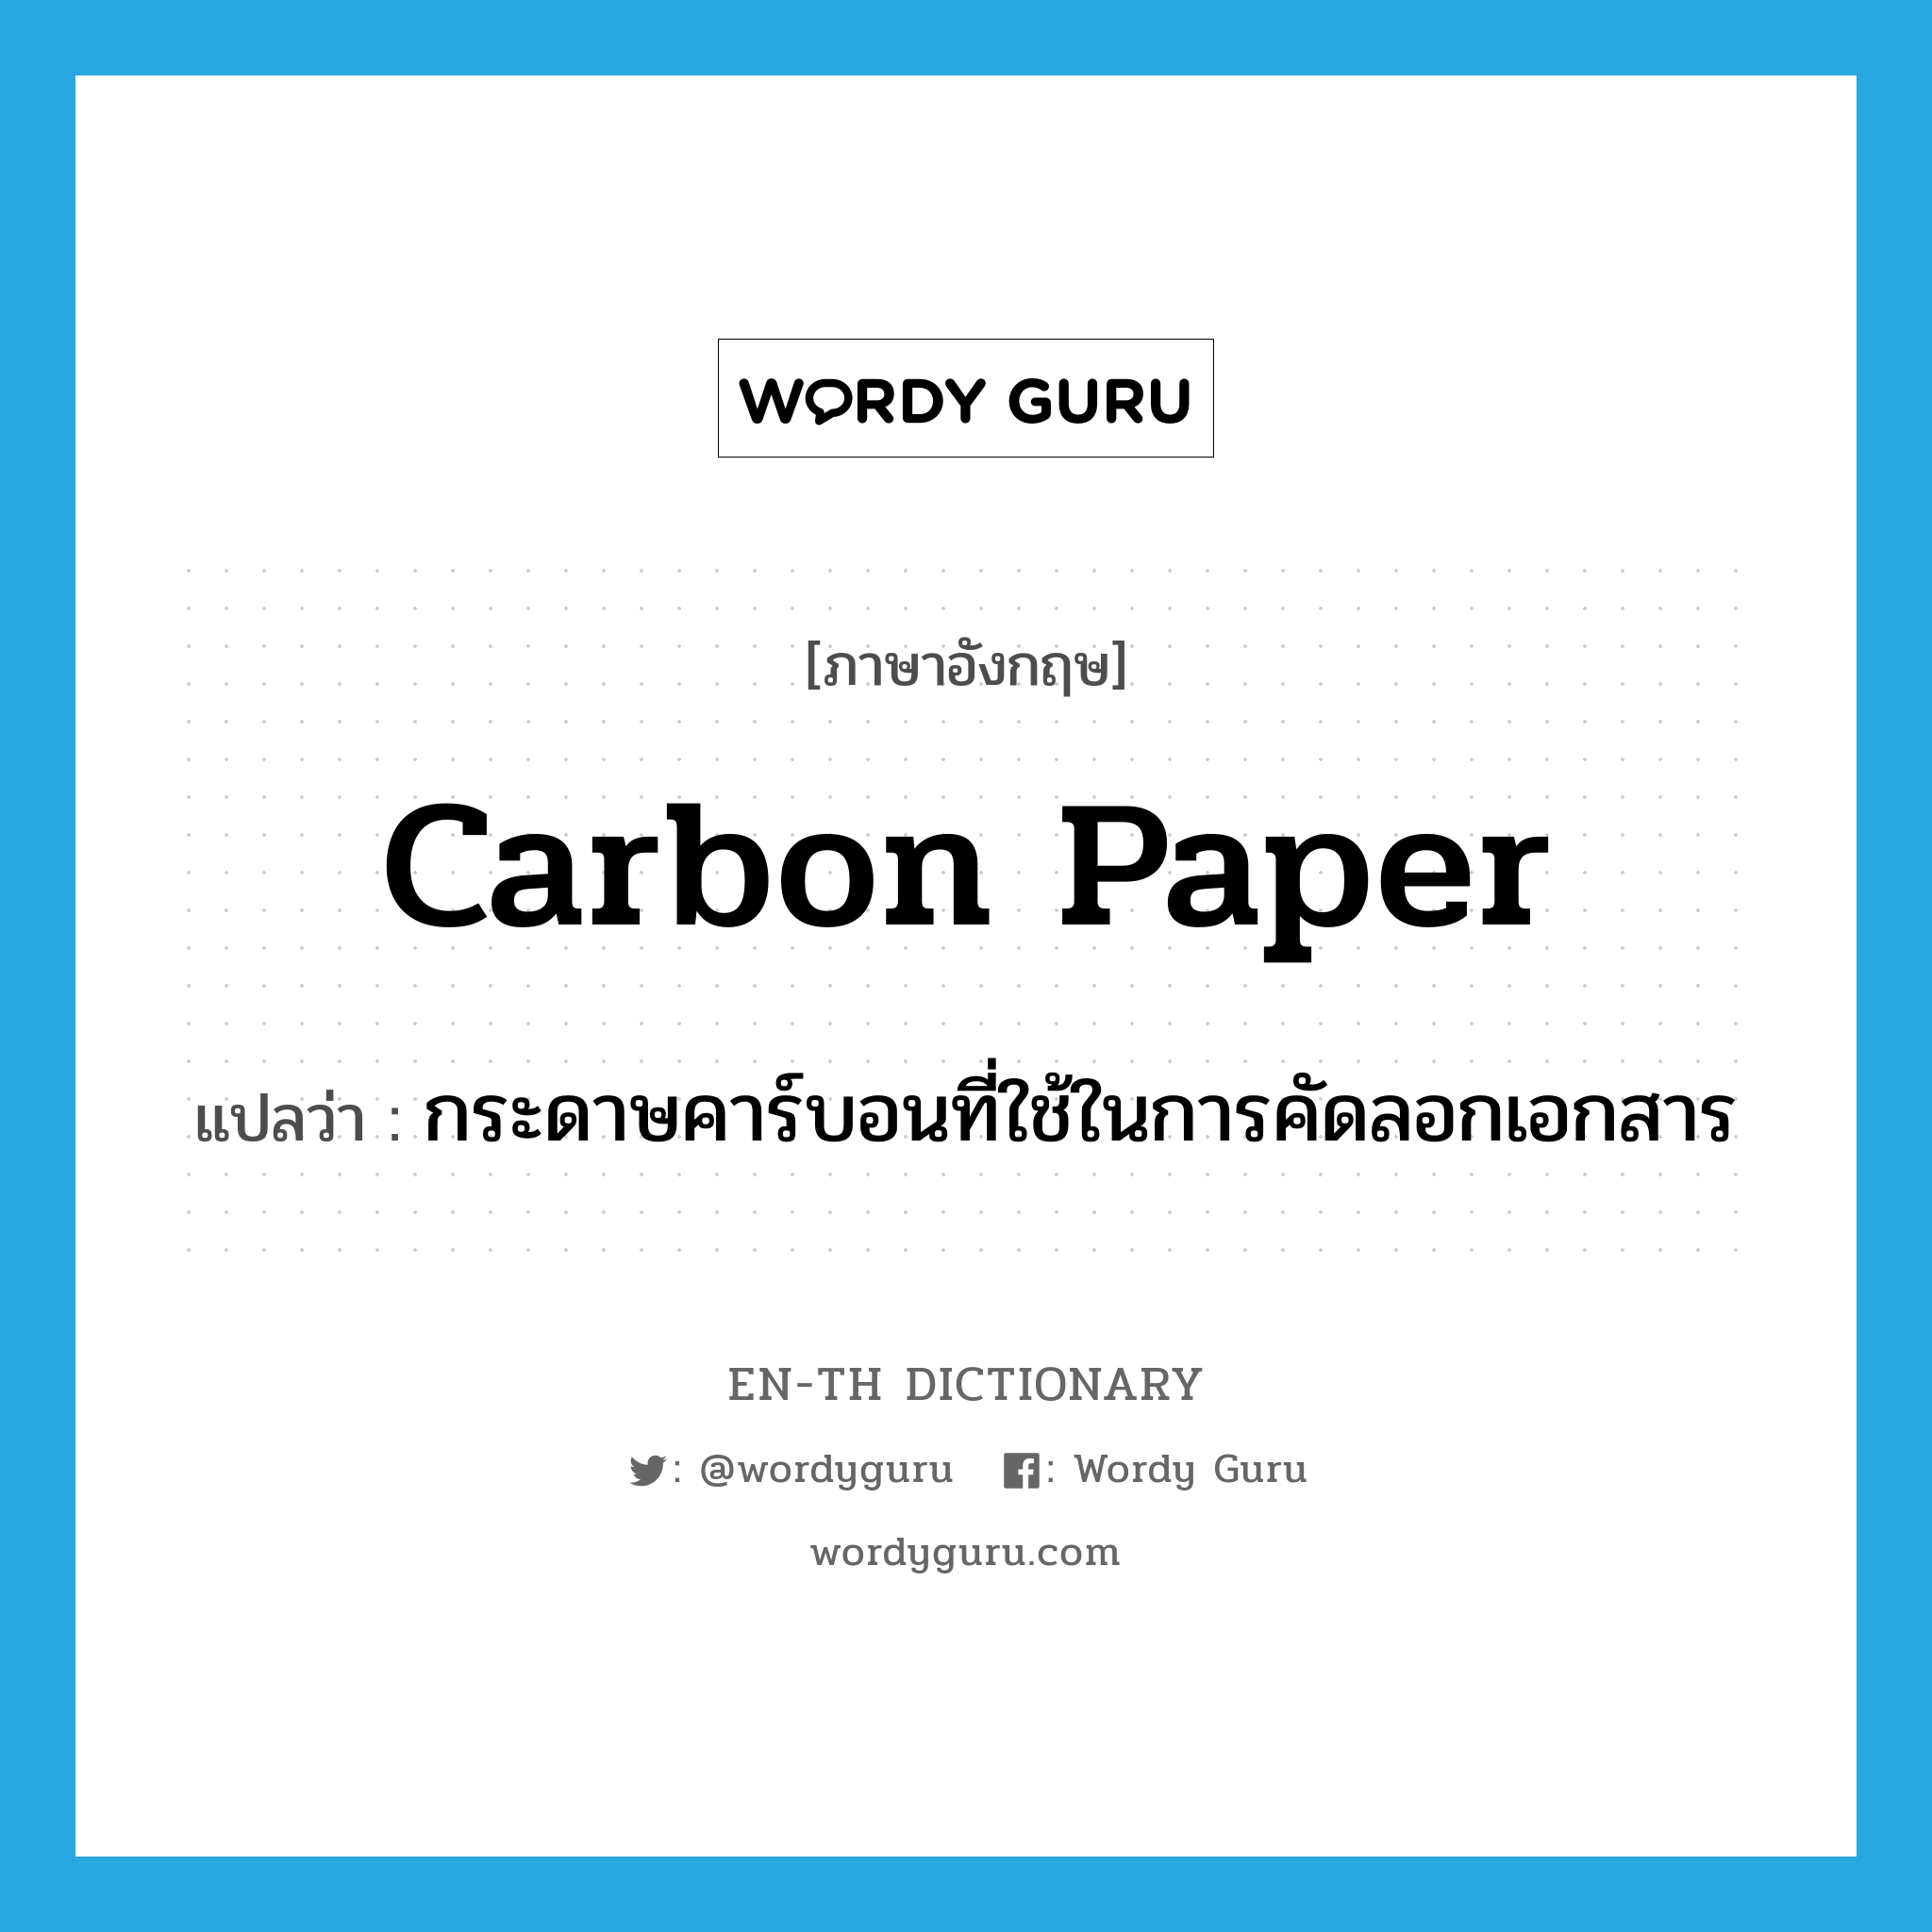 carbon paper แปลว่า?, คำศัพท์ภาษาอังกฤษ carbon paper แปลว่า กระดาษคาร์บอนที่ใช้ในการคัดลอกเอกสาร ประเภท N หมวด N